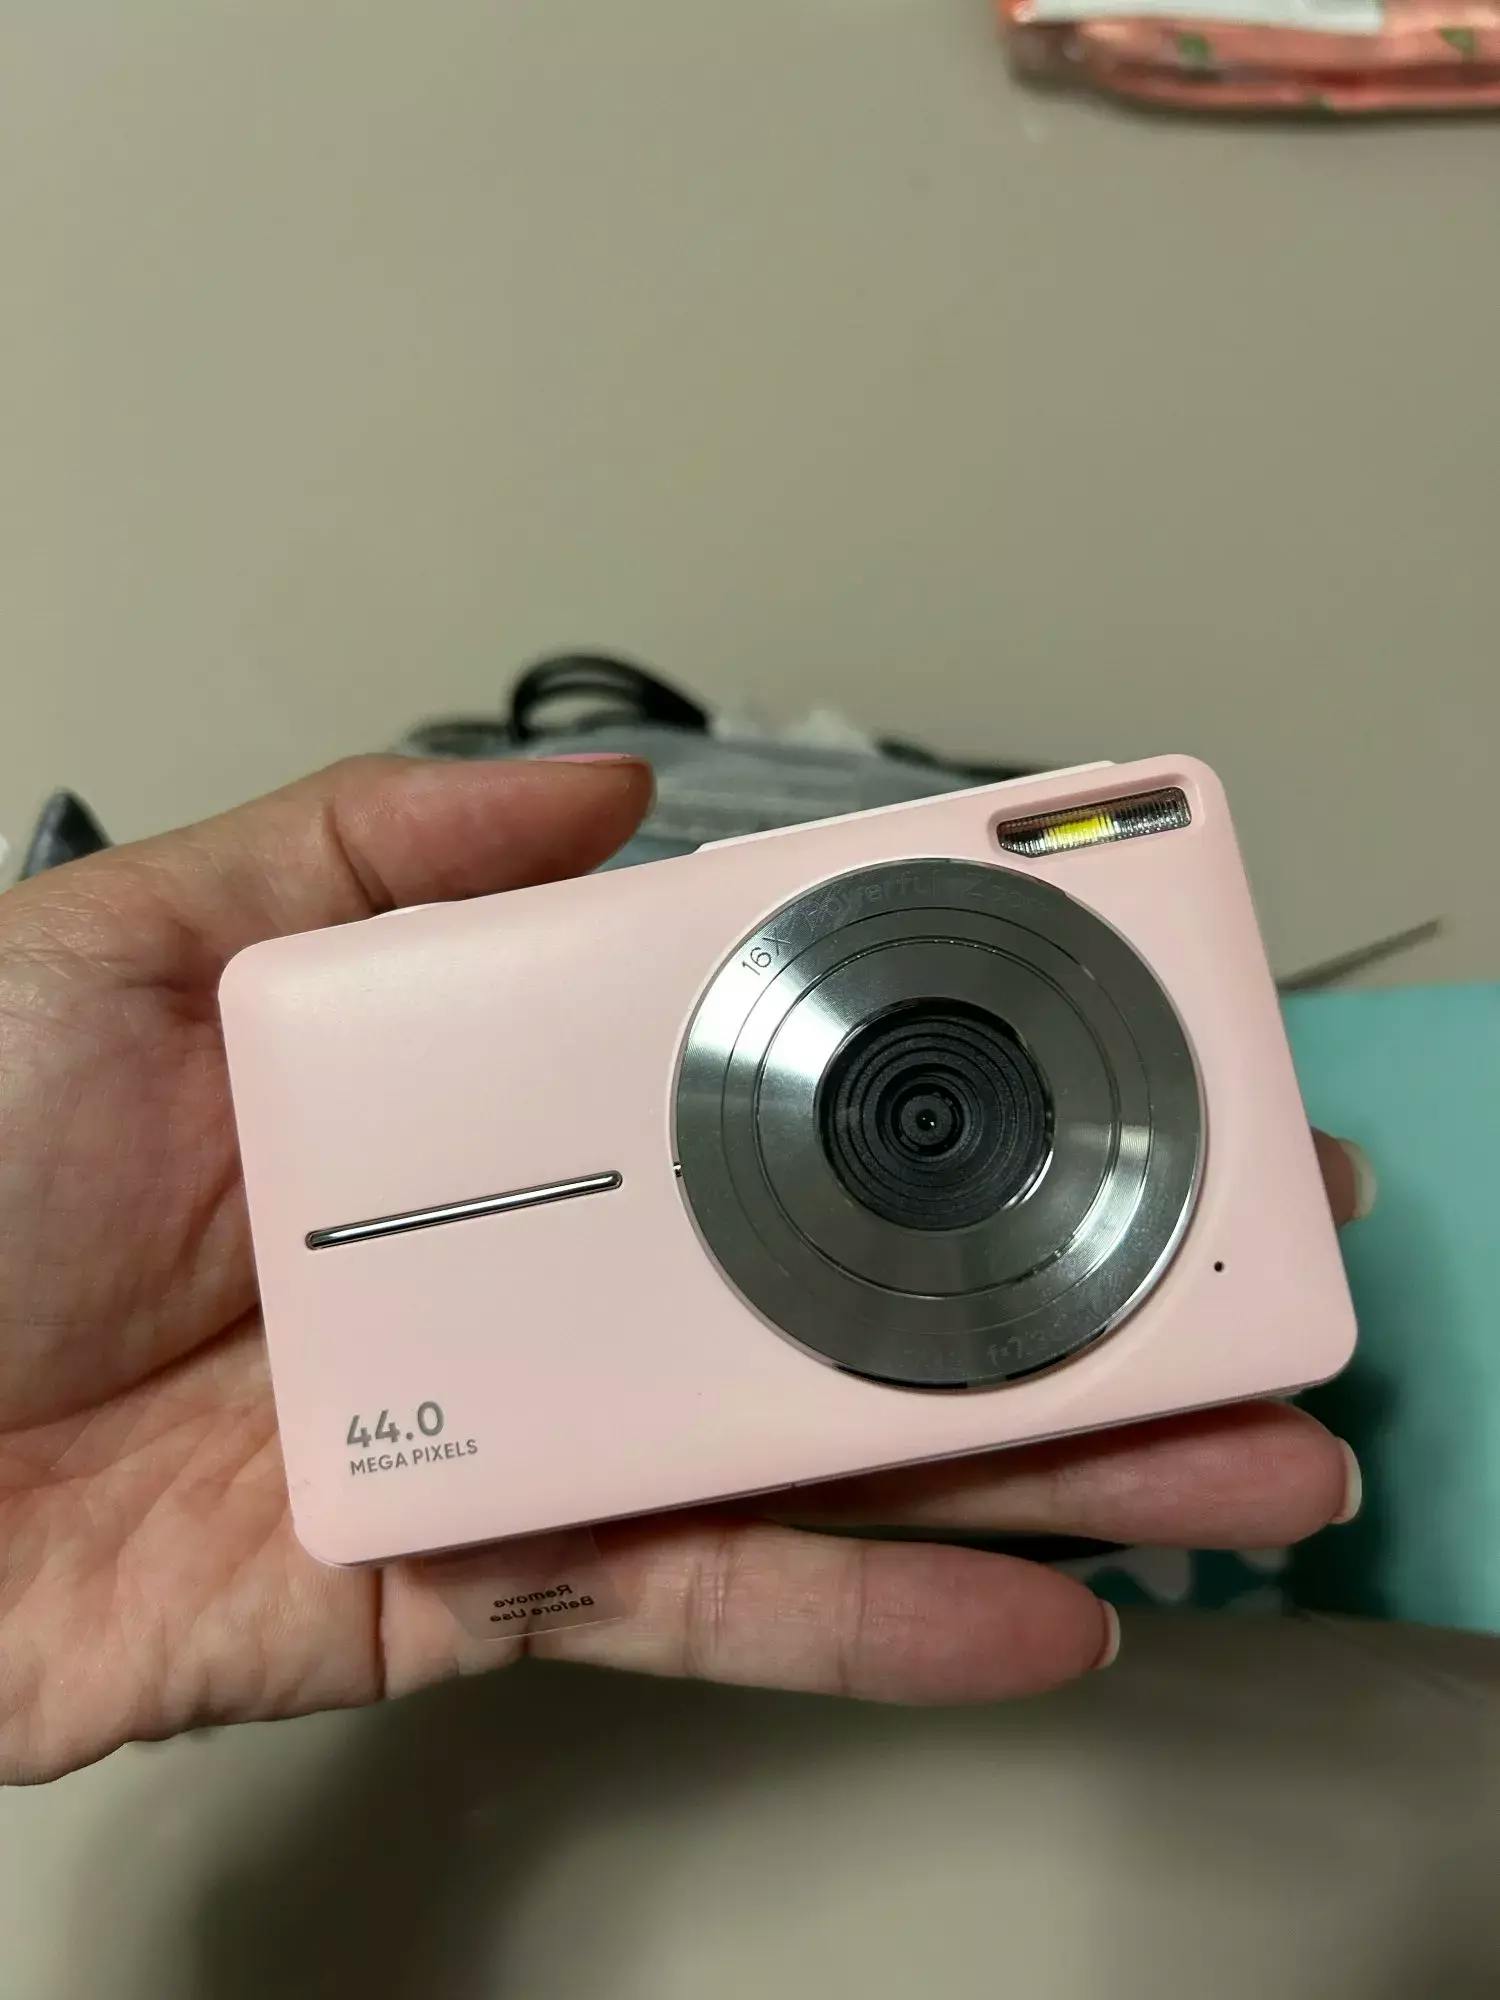 Snap'd - Digital Camera